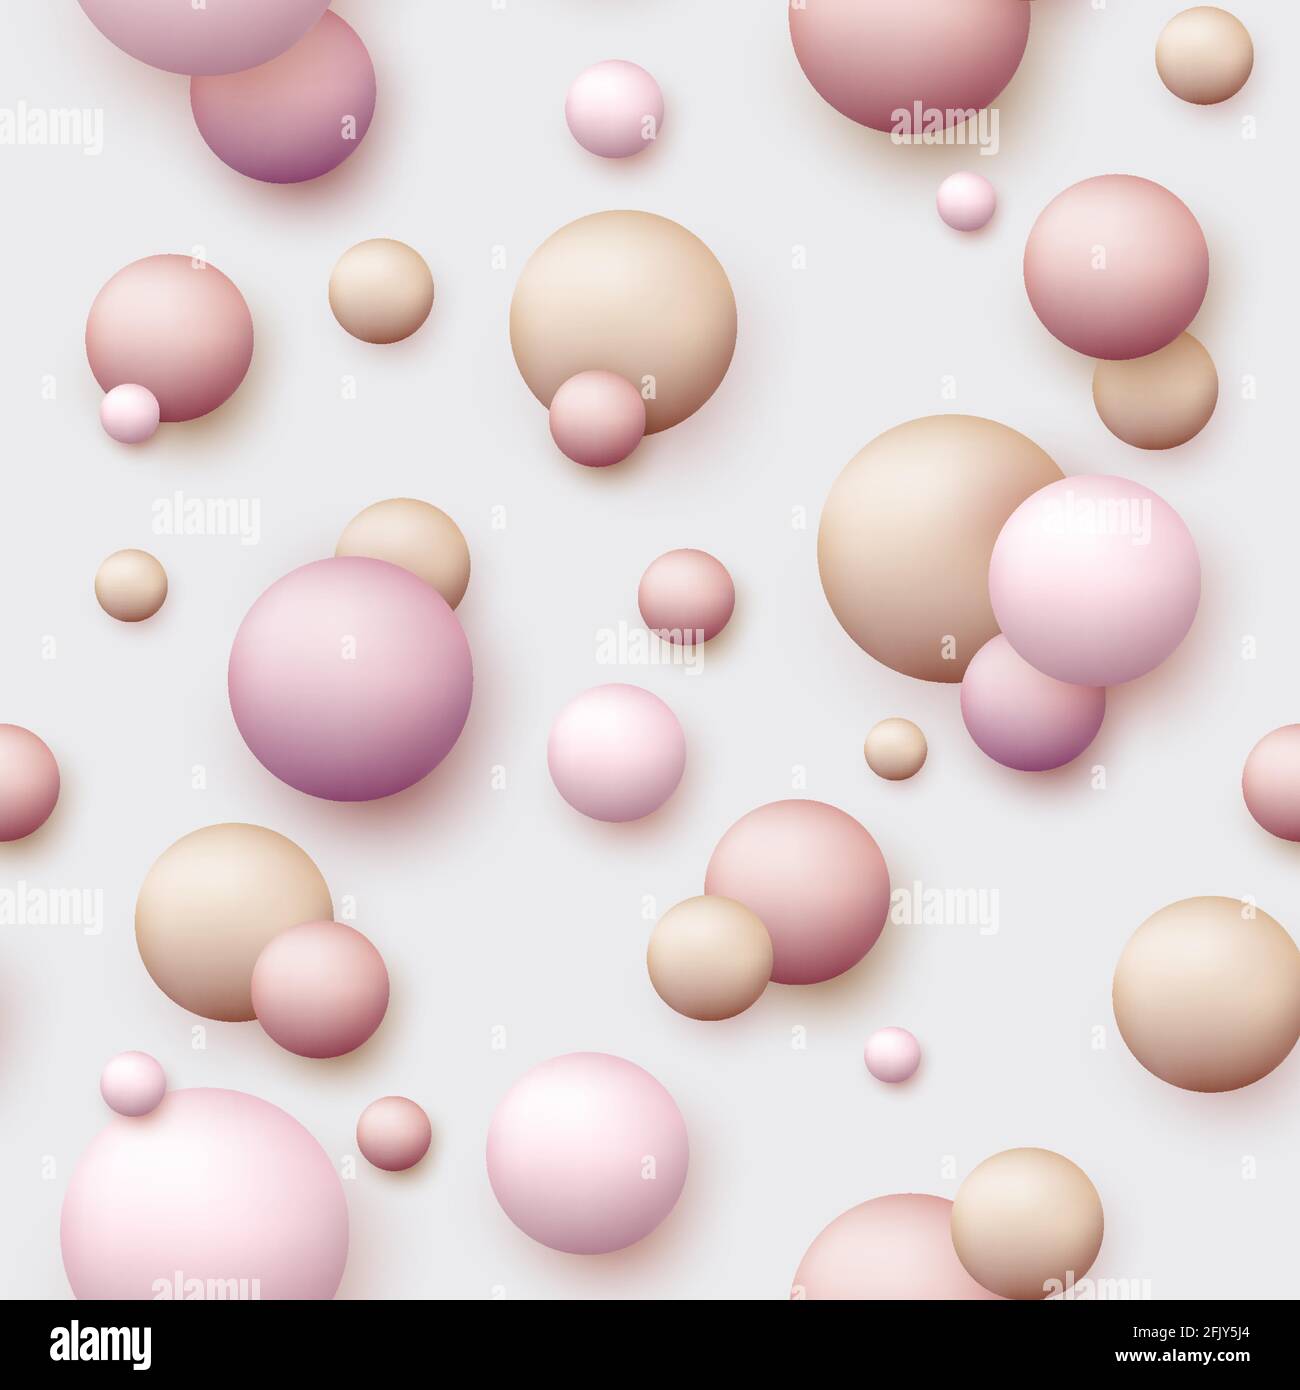 Vektor dynamischen Hintergrund mit bunten realistischen 3d-Kugeln. Runde Kugel in Perlen Pastellfarben auf dem Hintergrund. Puderbälle, Fundament, Pulver, erröten Stock Vektor